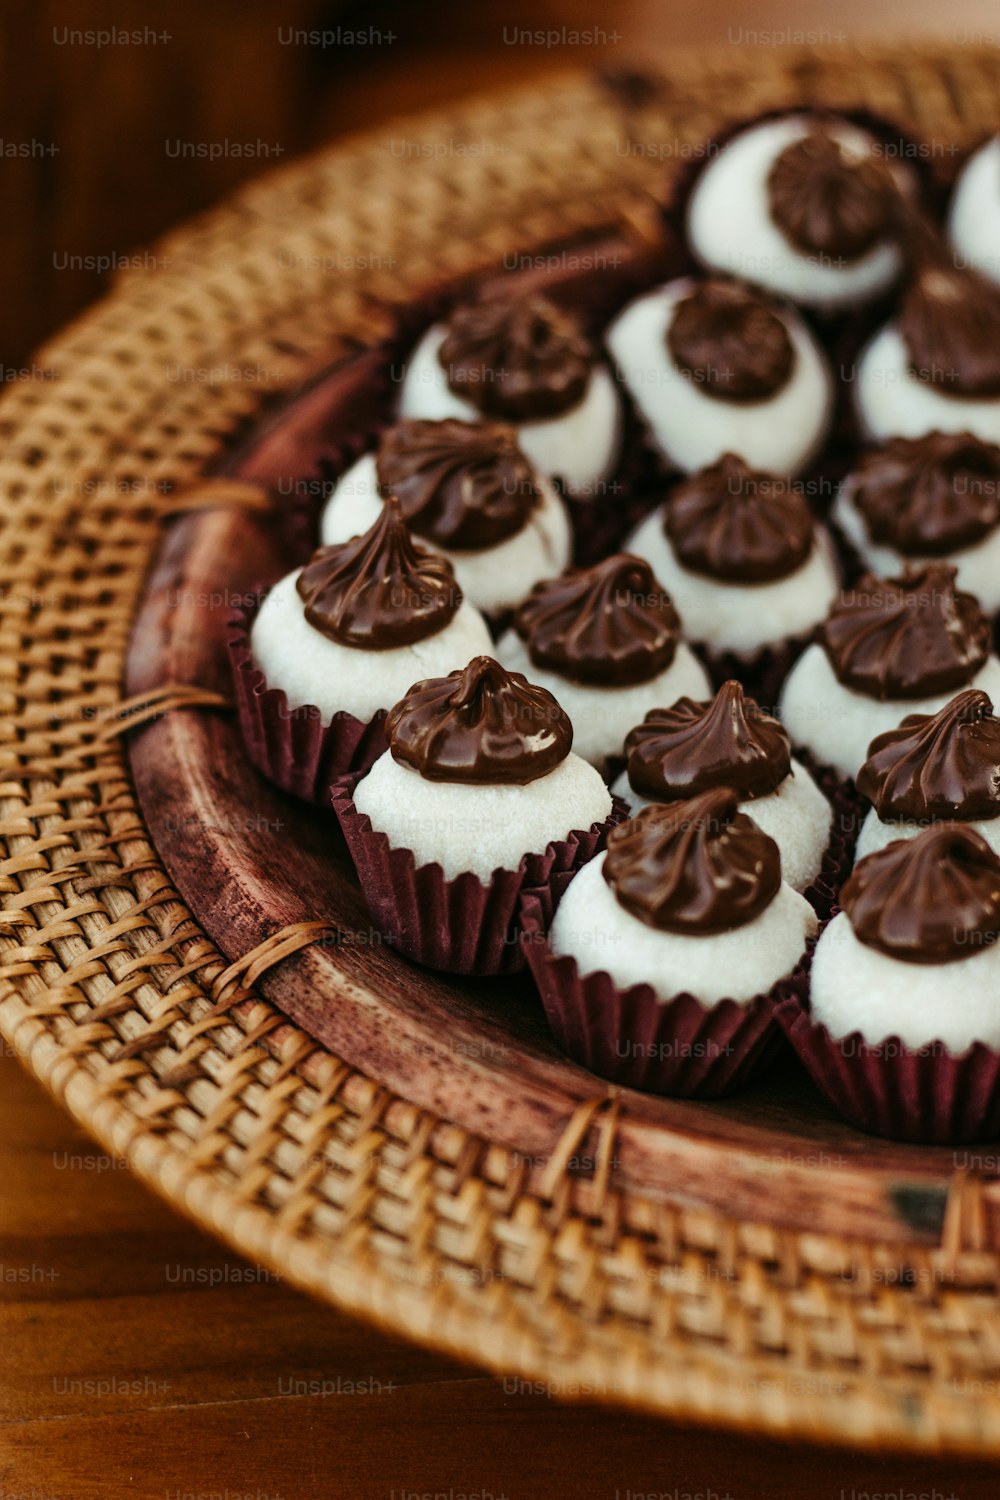 un piatto di cupcakes con glassa bianca e decorazioni al cioccolato